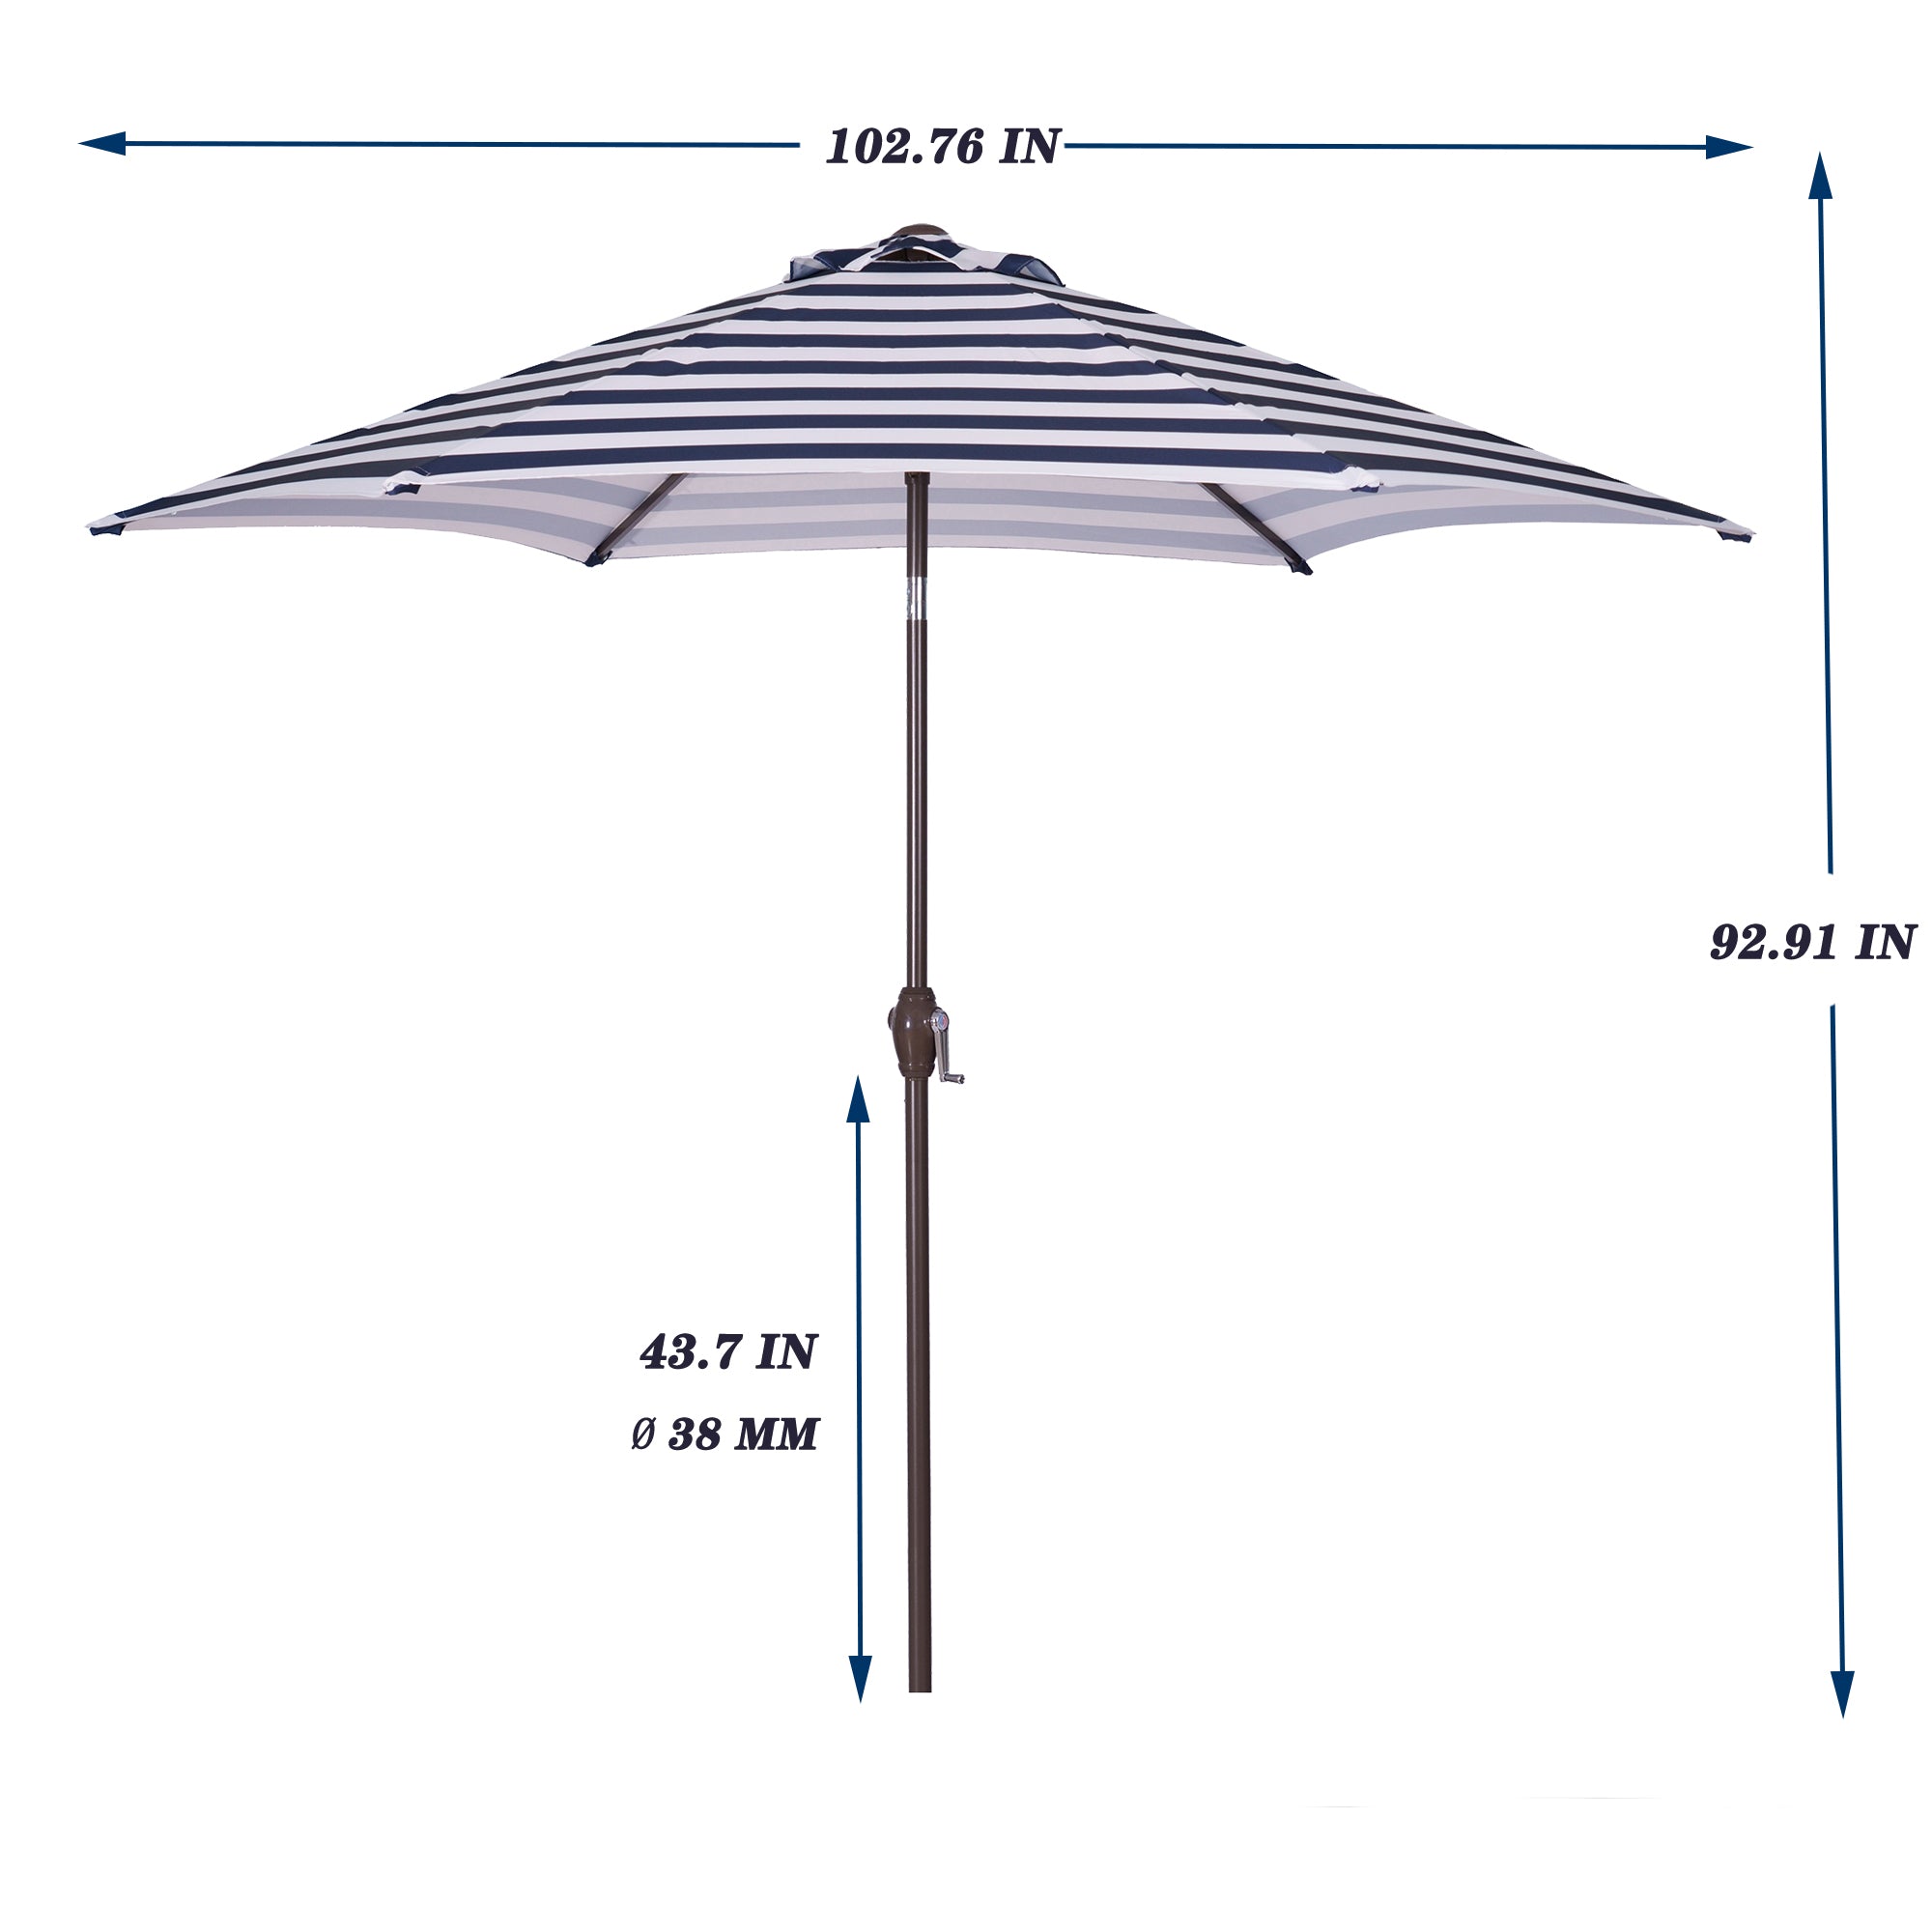 8.6FT Outdoor Solar Umbrella, Striped Patio Umbrella, Table Market Umbrella with Tilt and Crank for Garden, Deck, Backyard, Pool, and Beach, Blue White